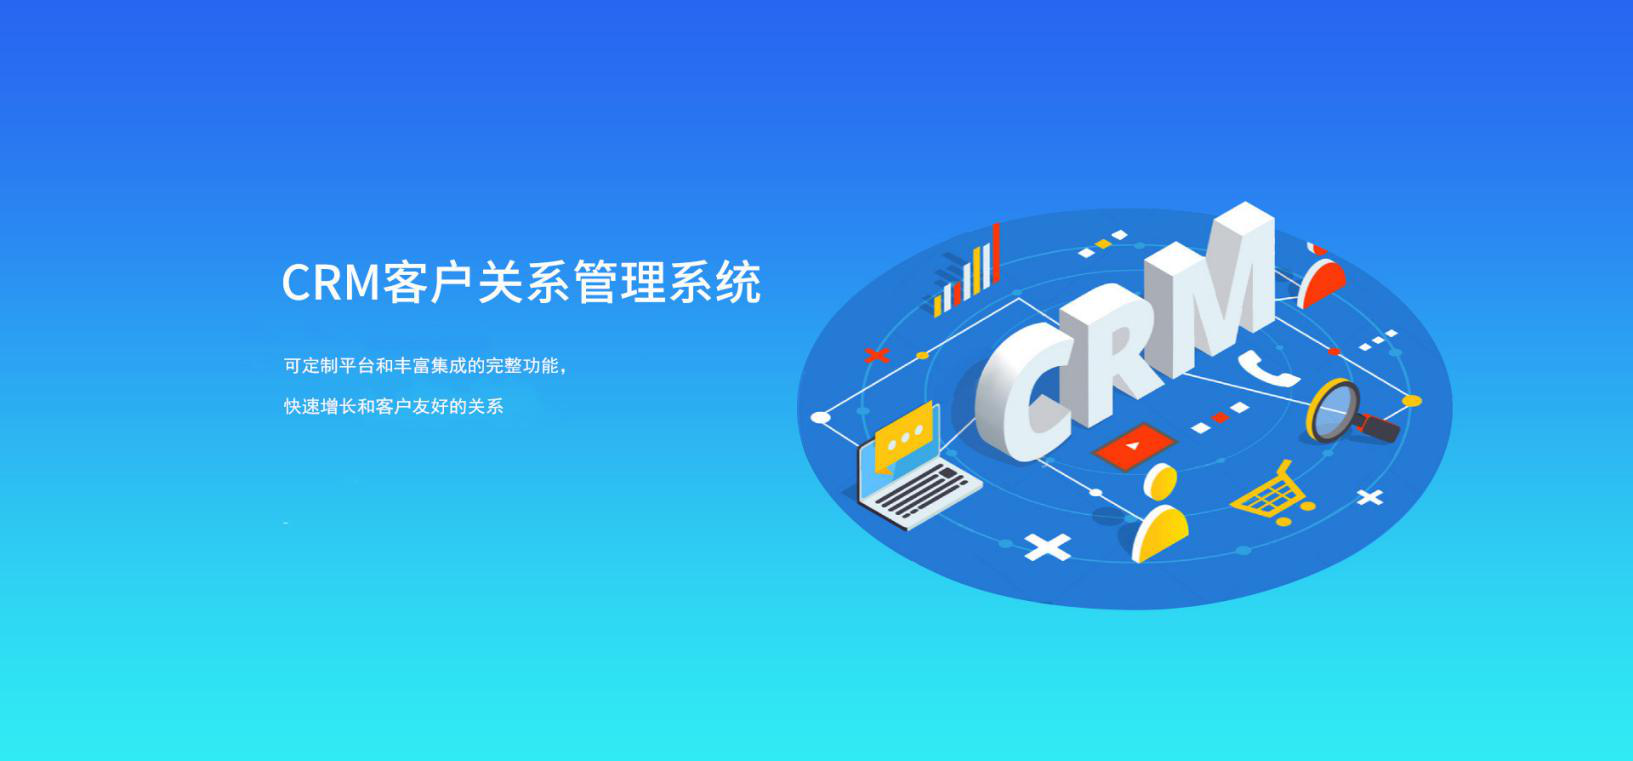 云通讯CRM平台 